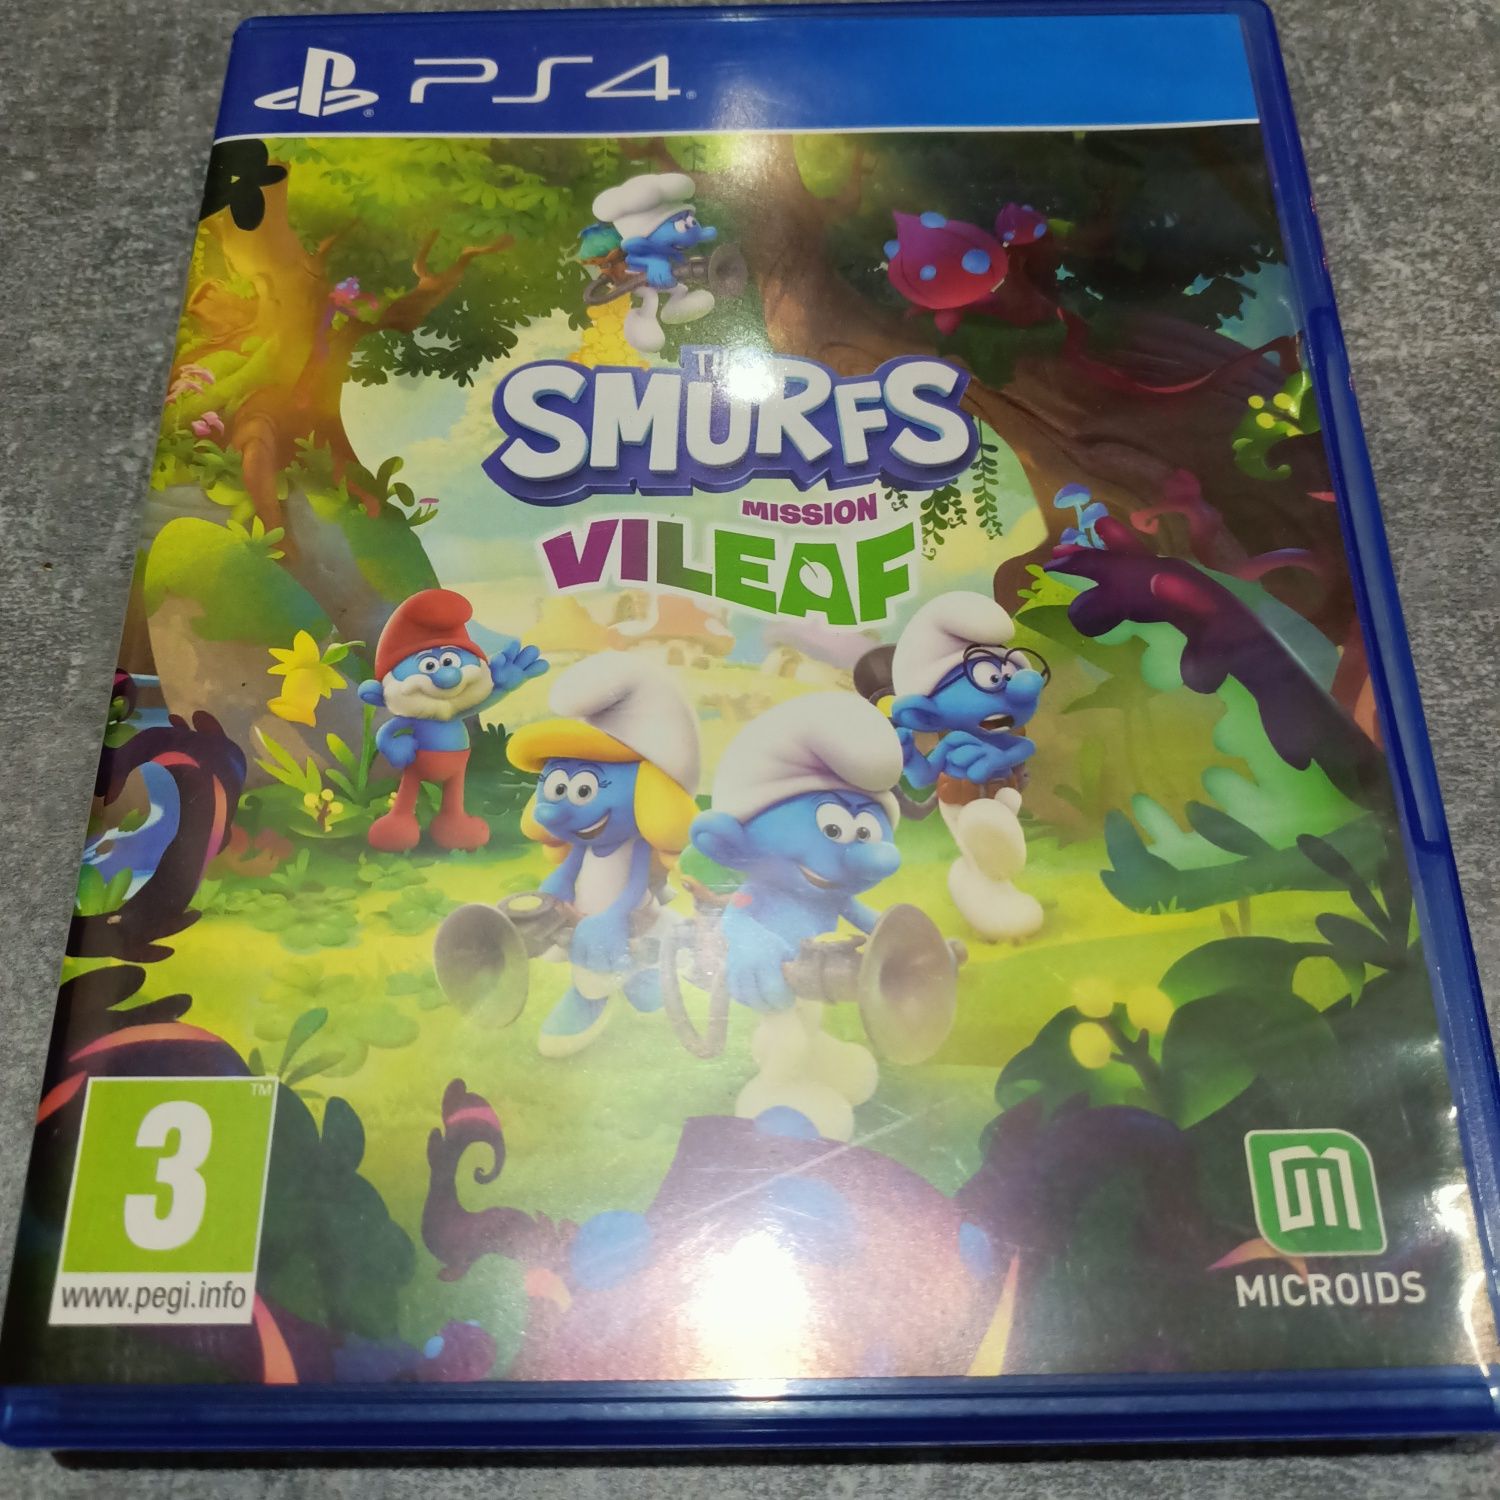 PS4 gra The Smurfs mission vileaf